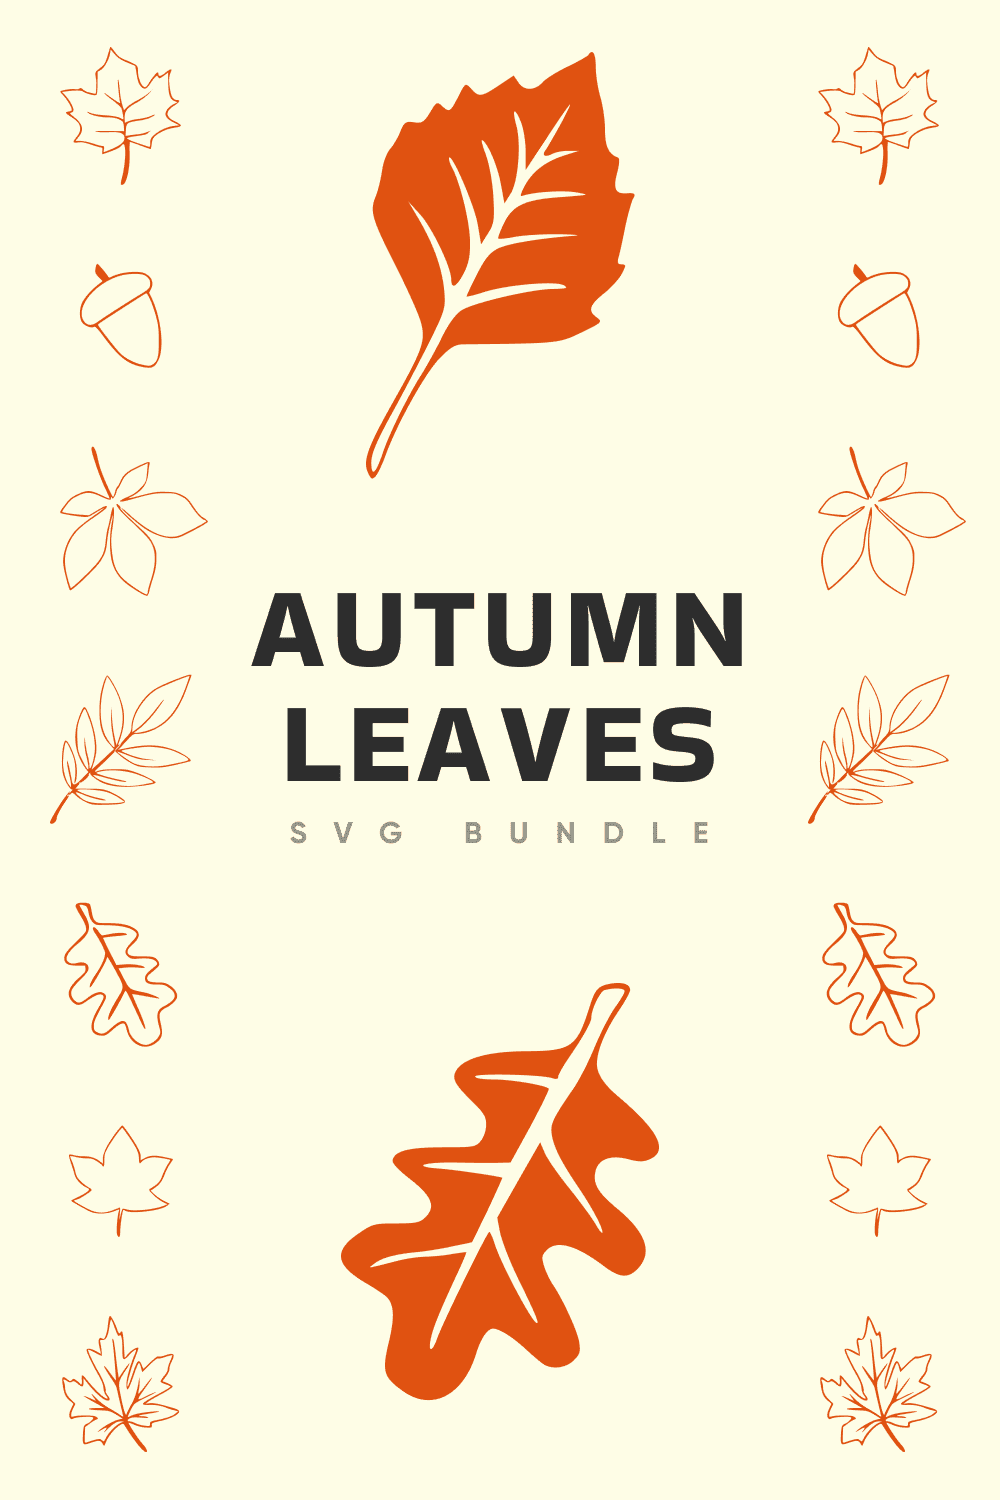 Autumn Leaves SVG Bundle - preview image.